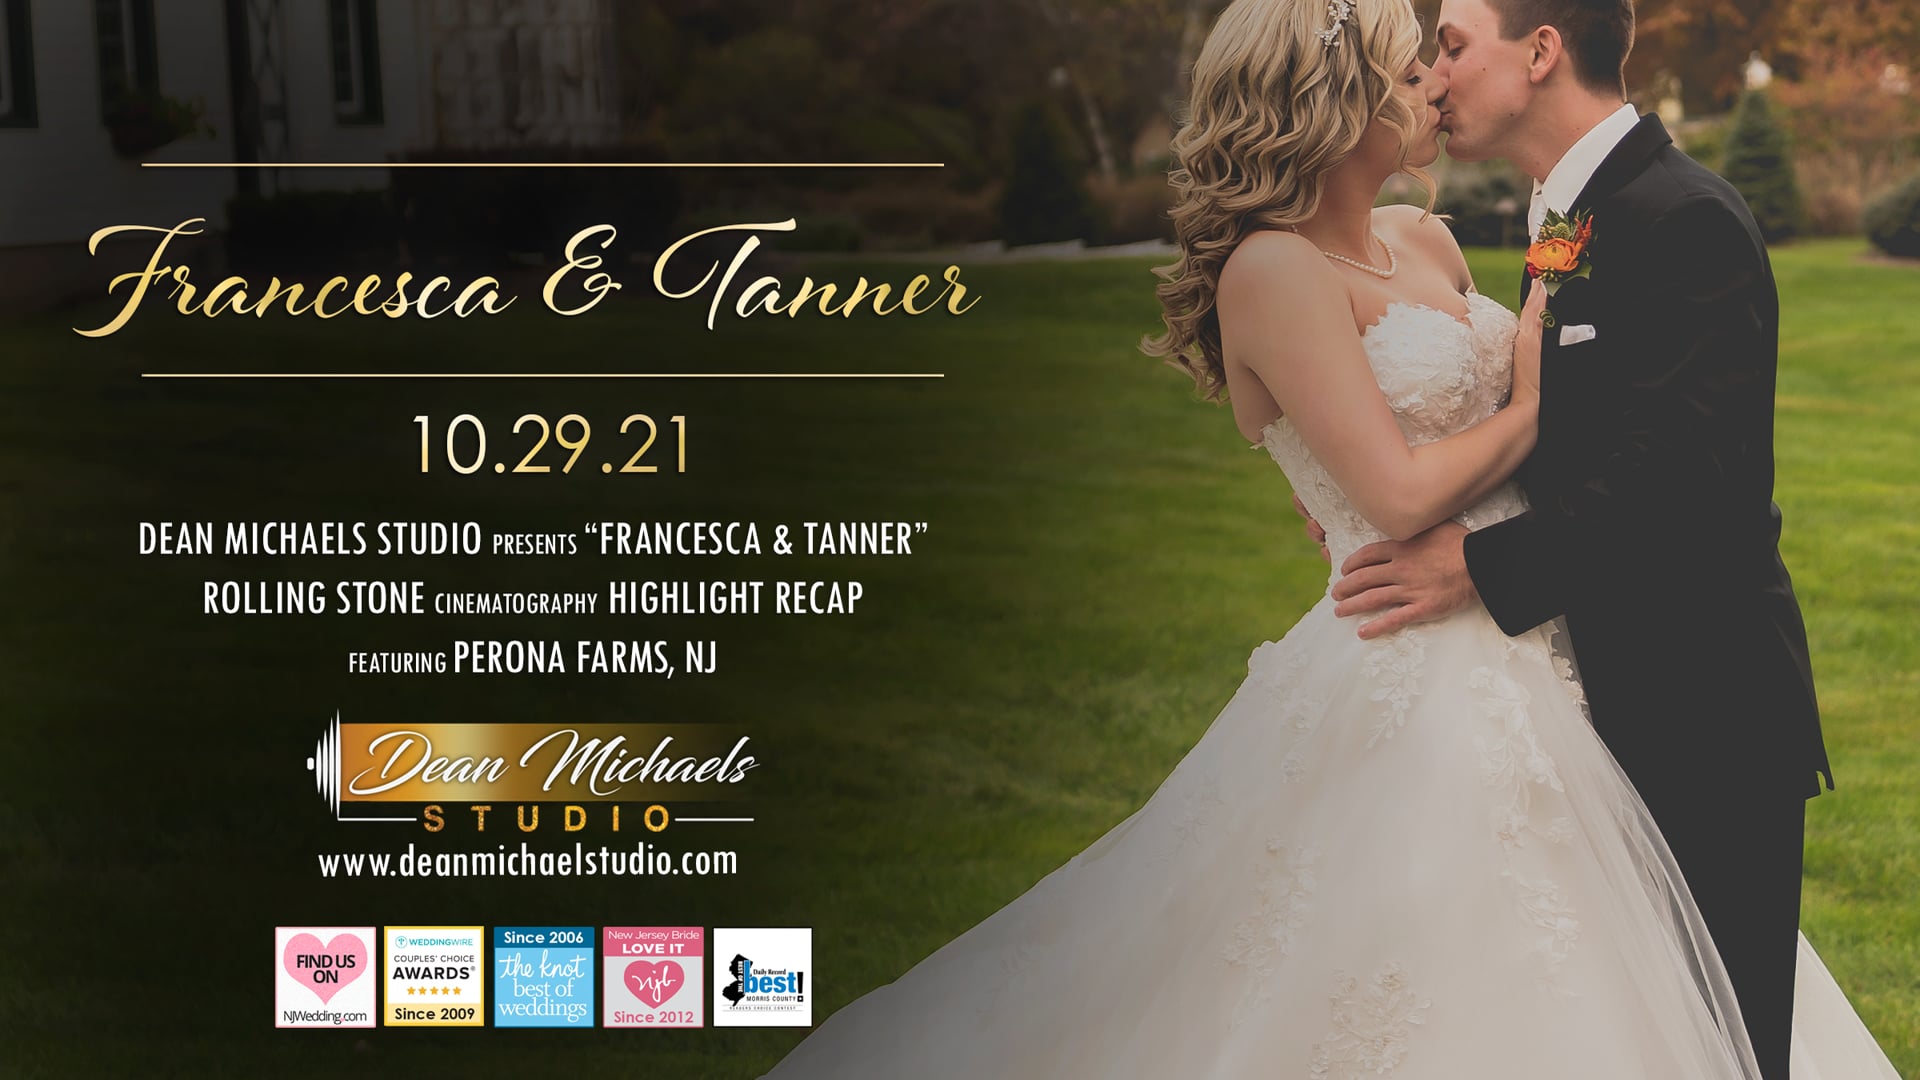 Francesca & Tanner's Wedding Highlight Recap at Perona Farms, NJ